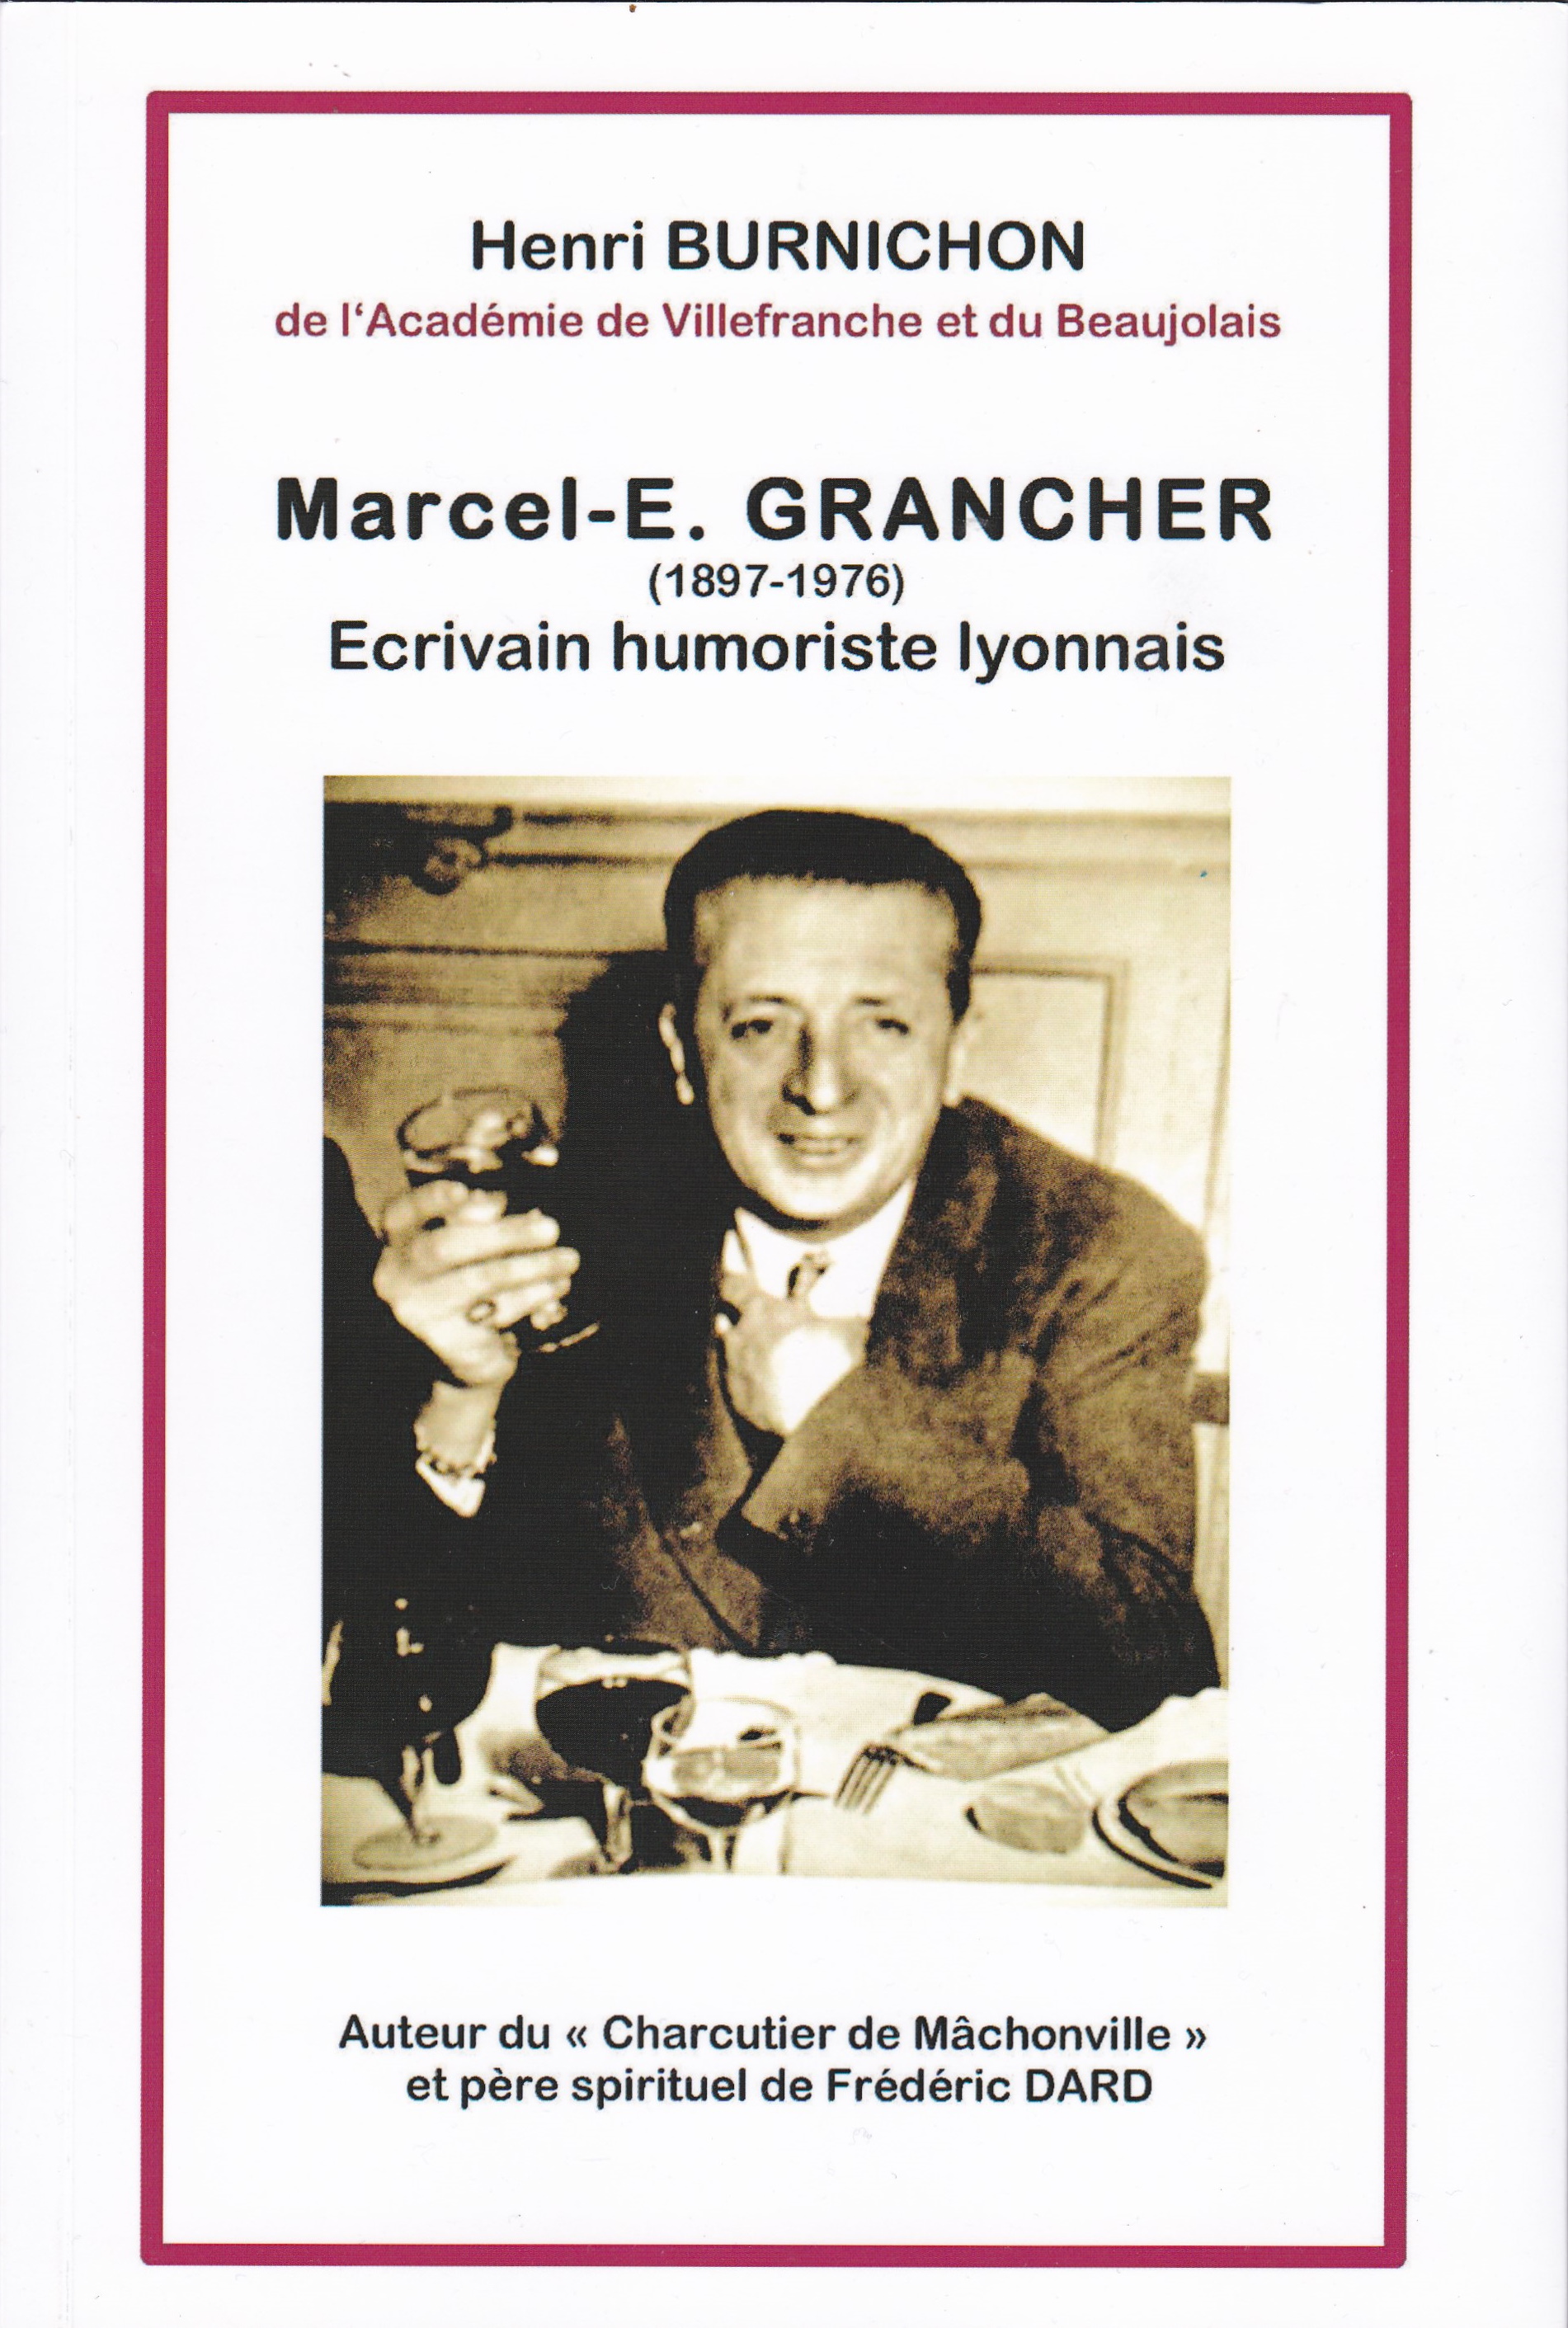 Marcel-E. Grancher